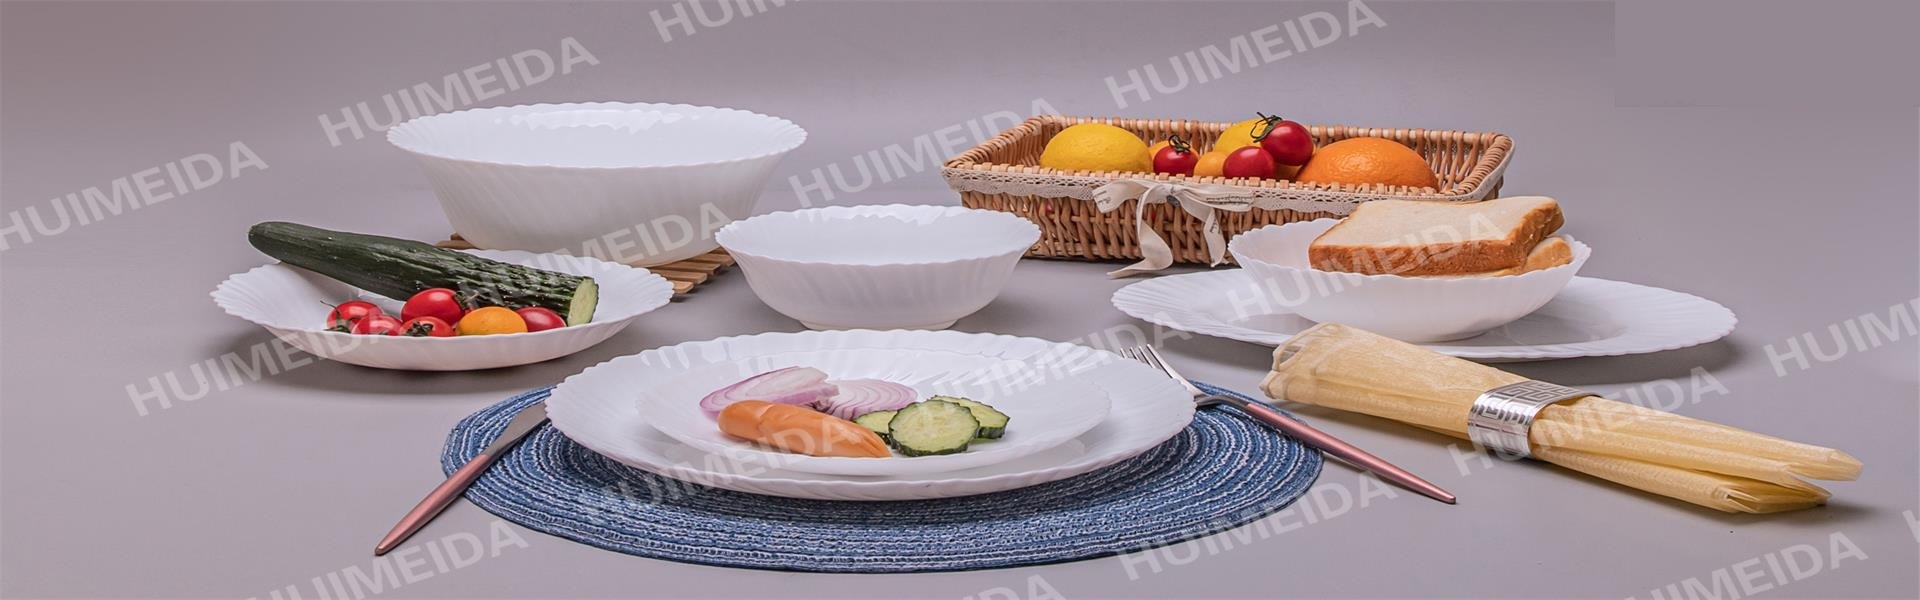 опаловый стакан, стеклянная посуда, набор посуды,XIANNING HUIMEIDA INDUSTRY&TRADE CO.,LTD